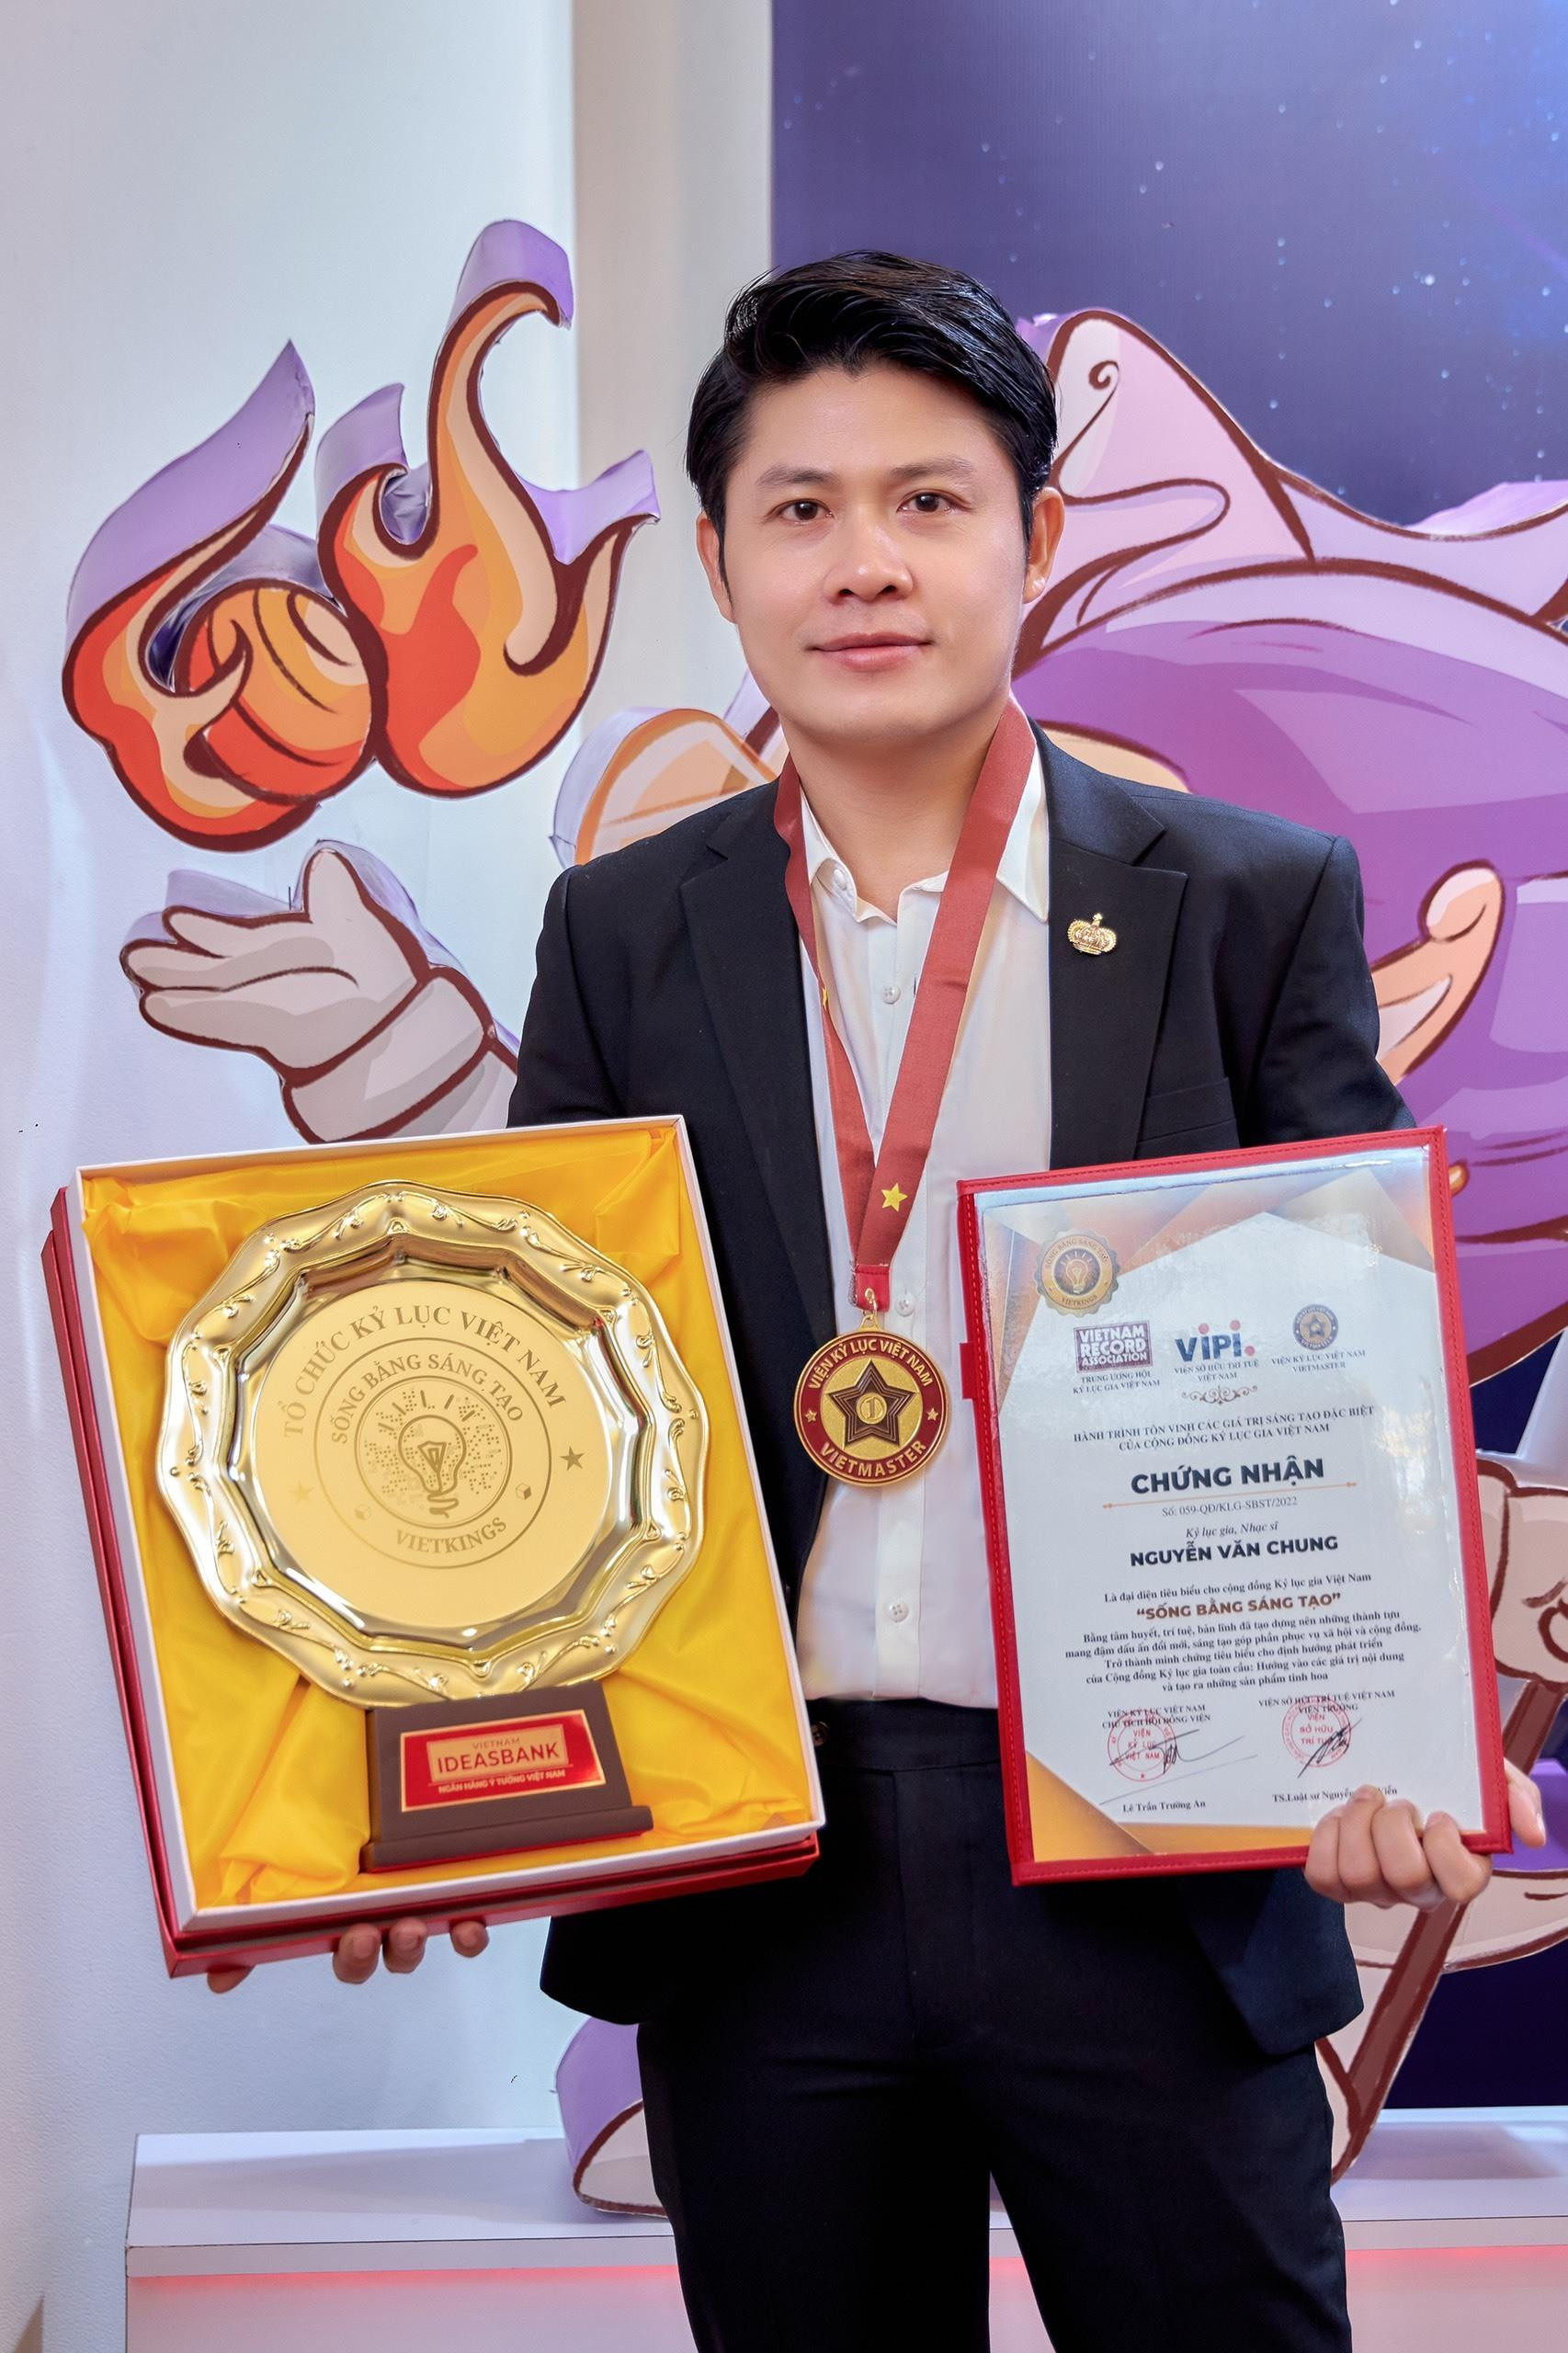 Nhạc sĩ Nguyễn Văn Chung nhận giải thưởng 'Sống bằng sáng tạo' - 1